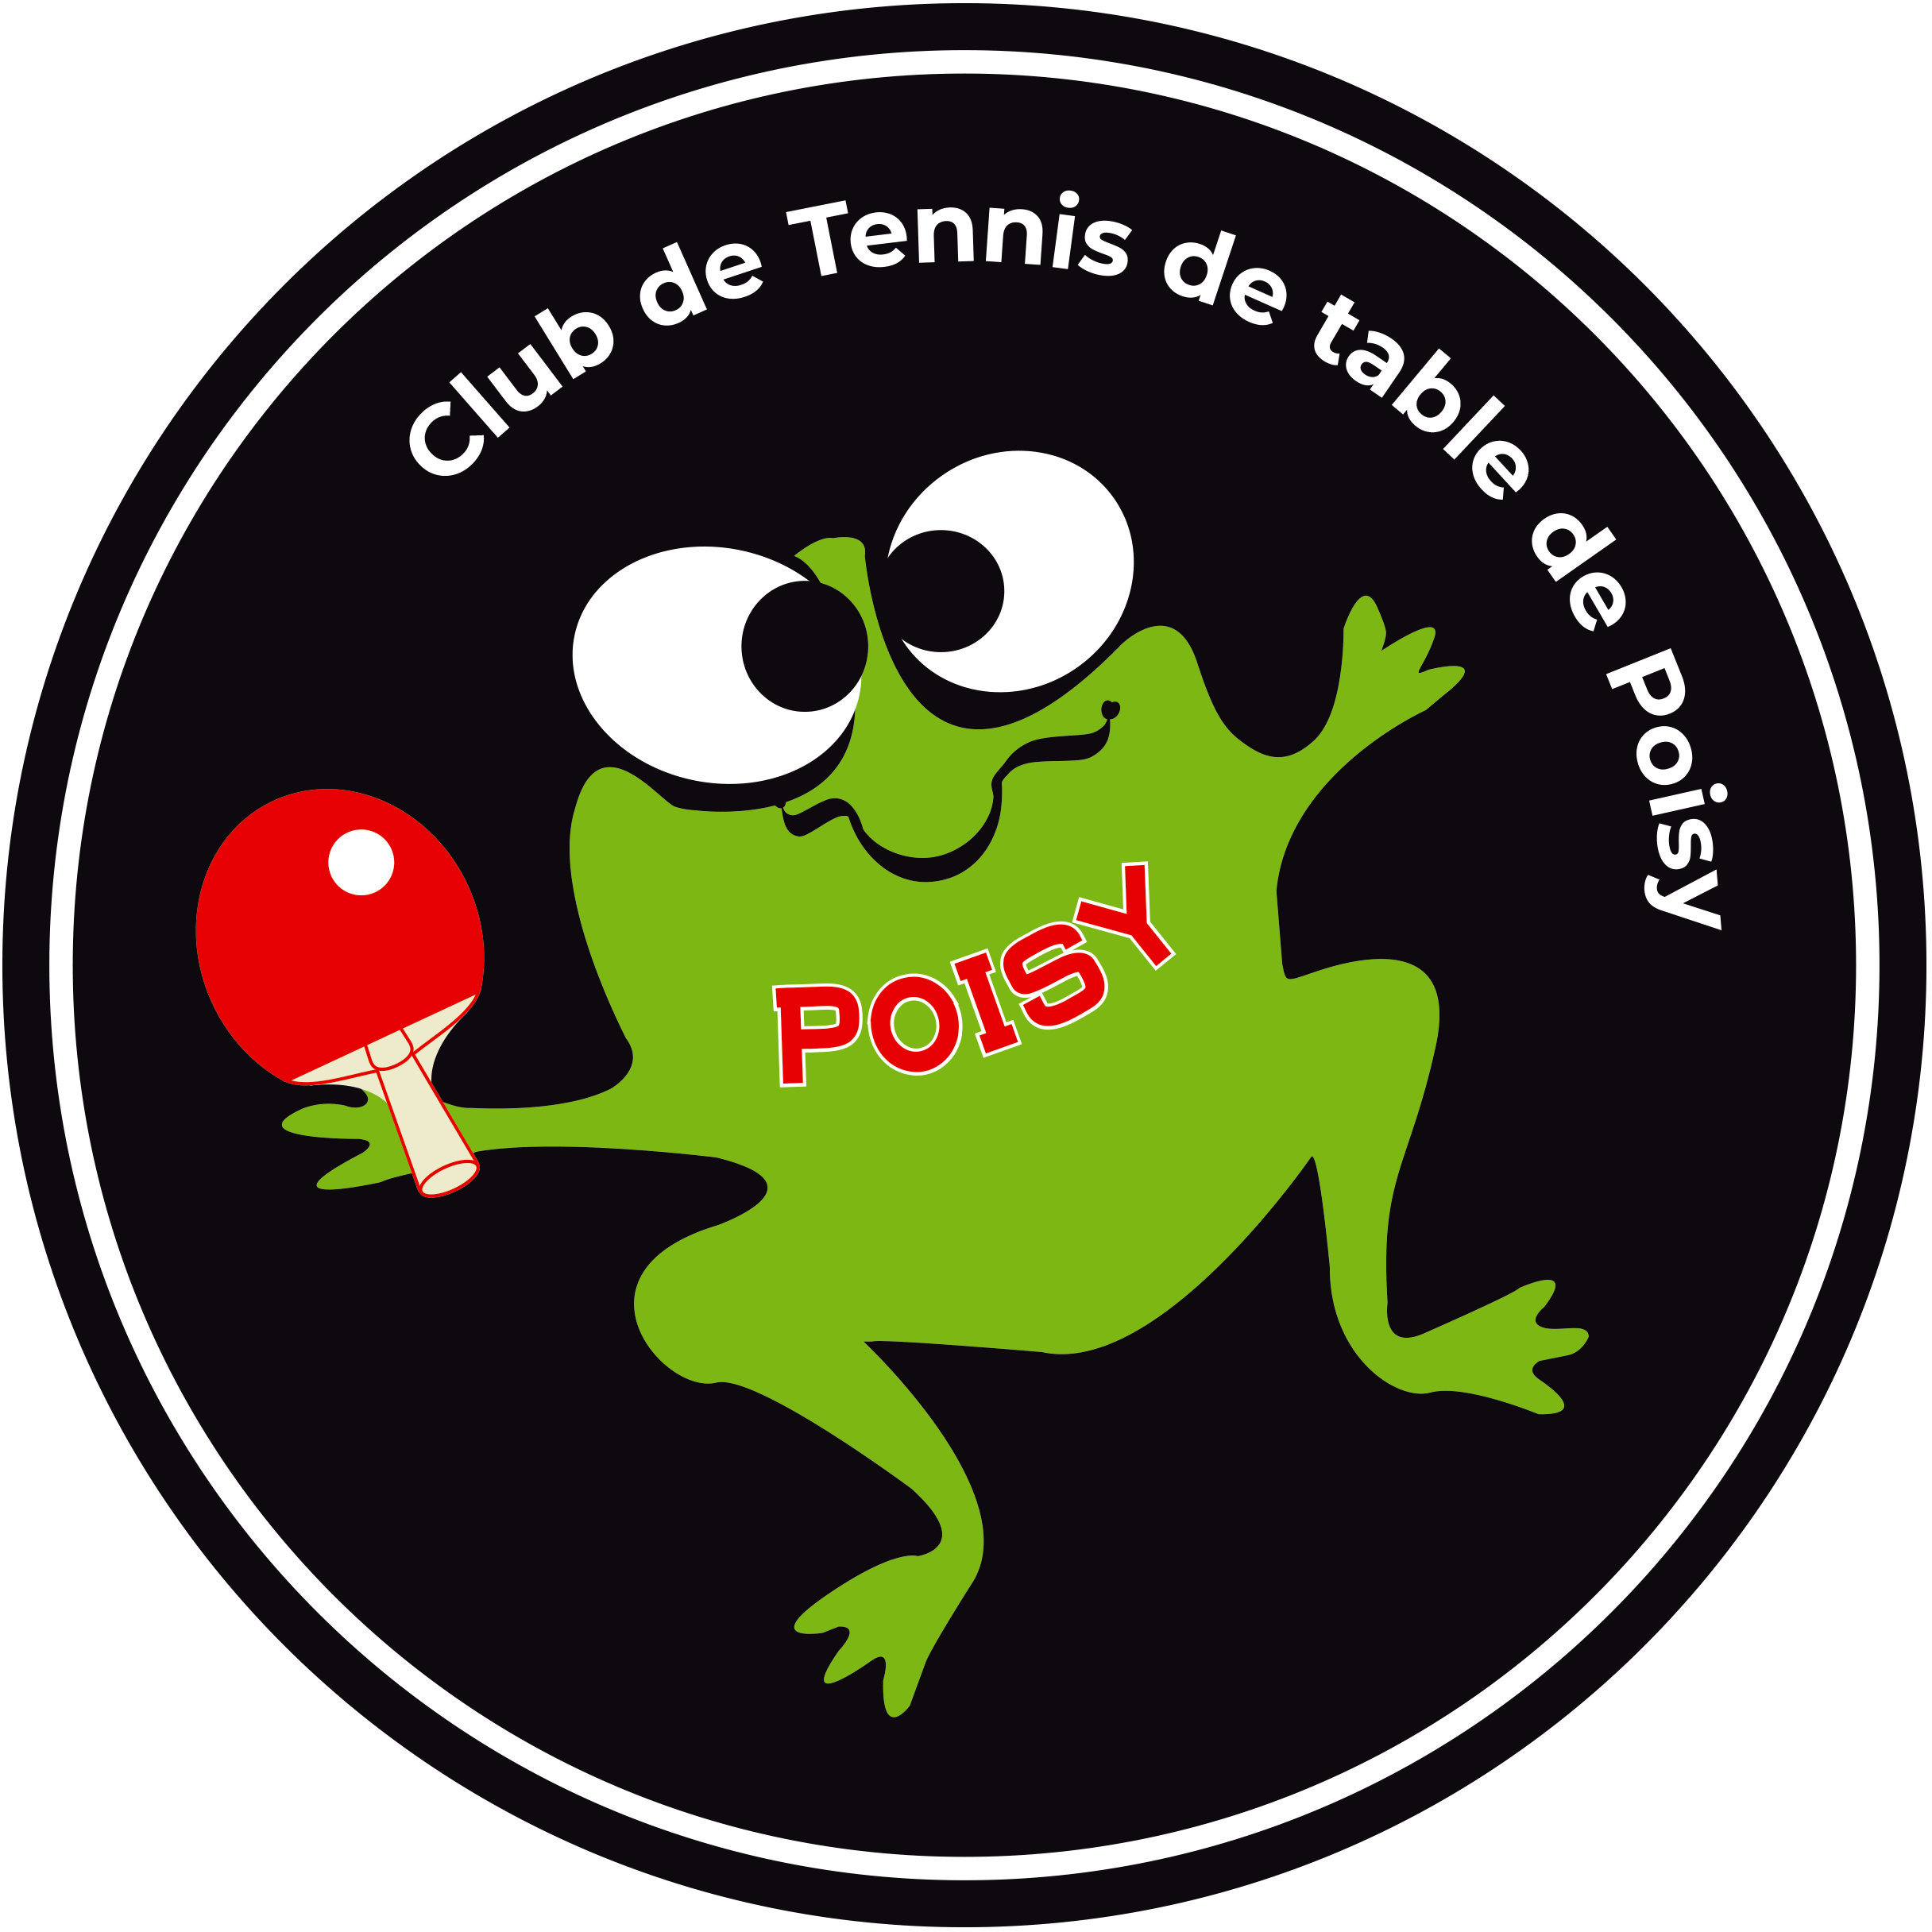 Club de tennis de table de Poisy